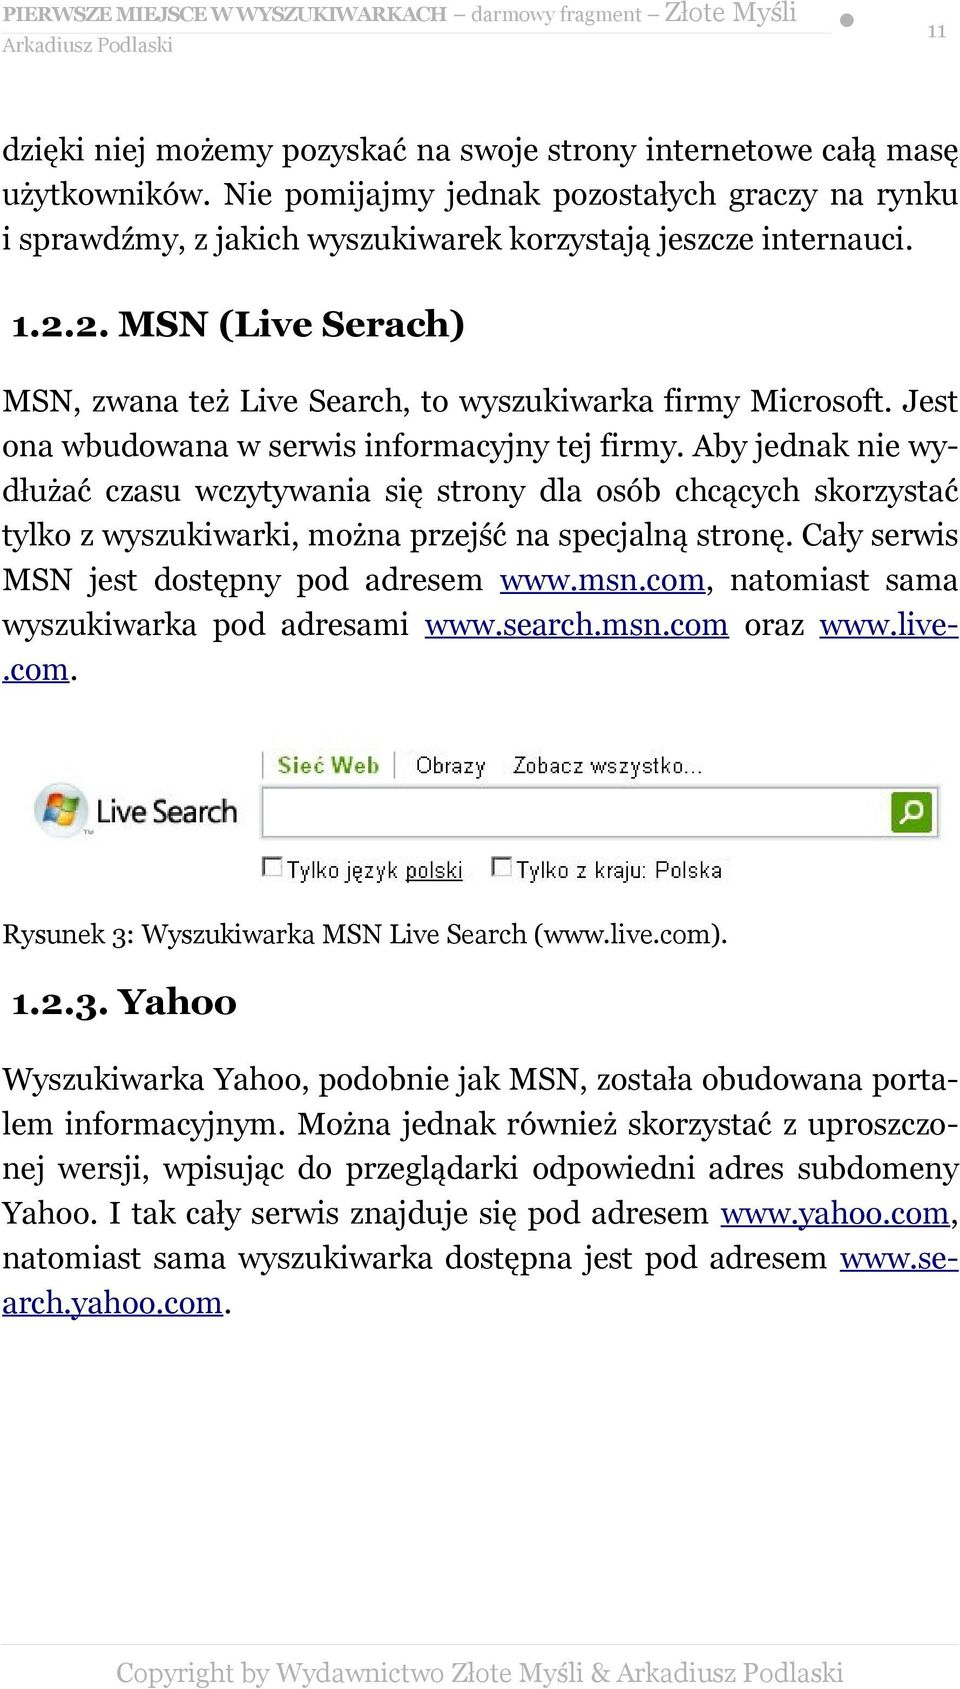 Aby jednak nie wydłużać czasu wczytywania się strony dla osób chcących skorzystać tylko z wyszukiwarki, można przejść na specjalną stronę. Cały serwis MSN jest dostępny pod adresem www.msn.